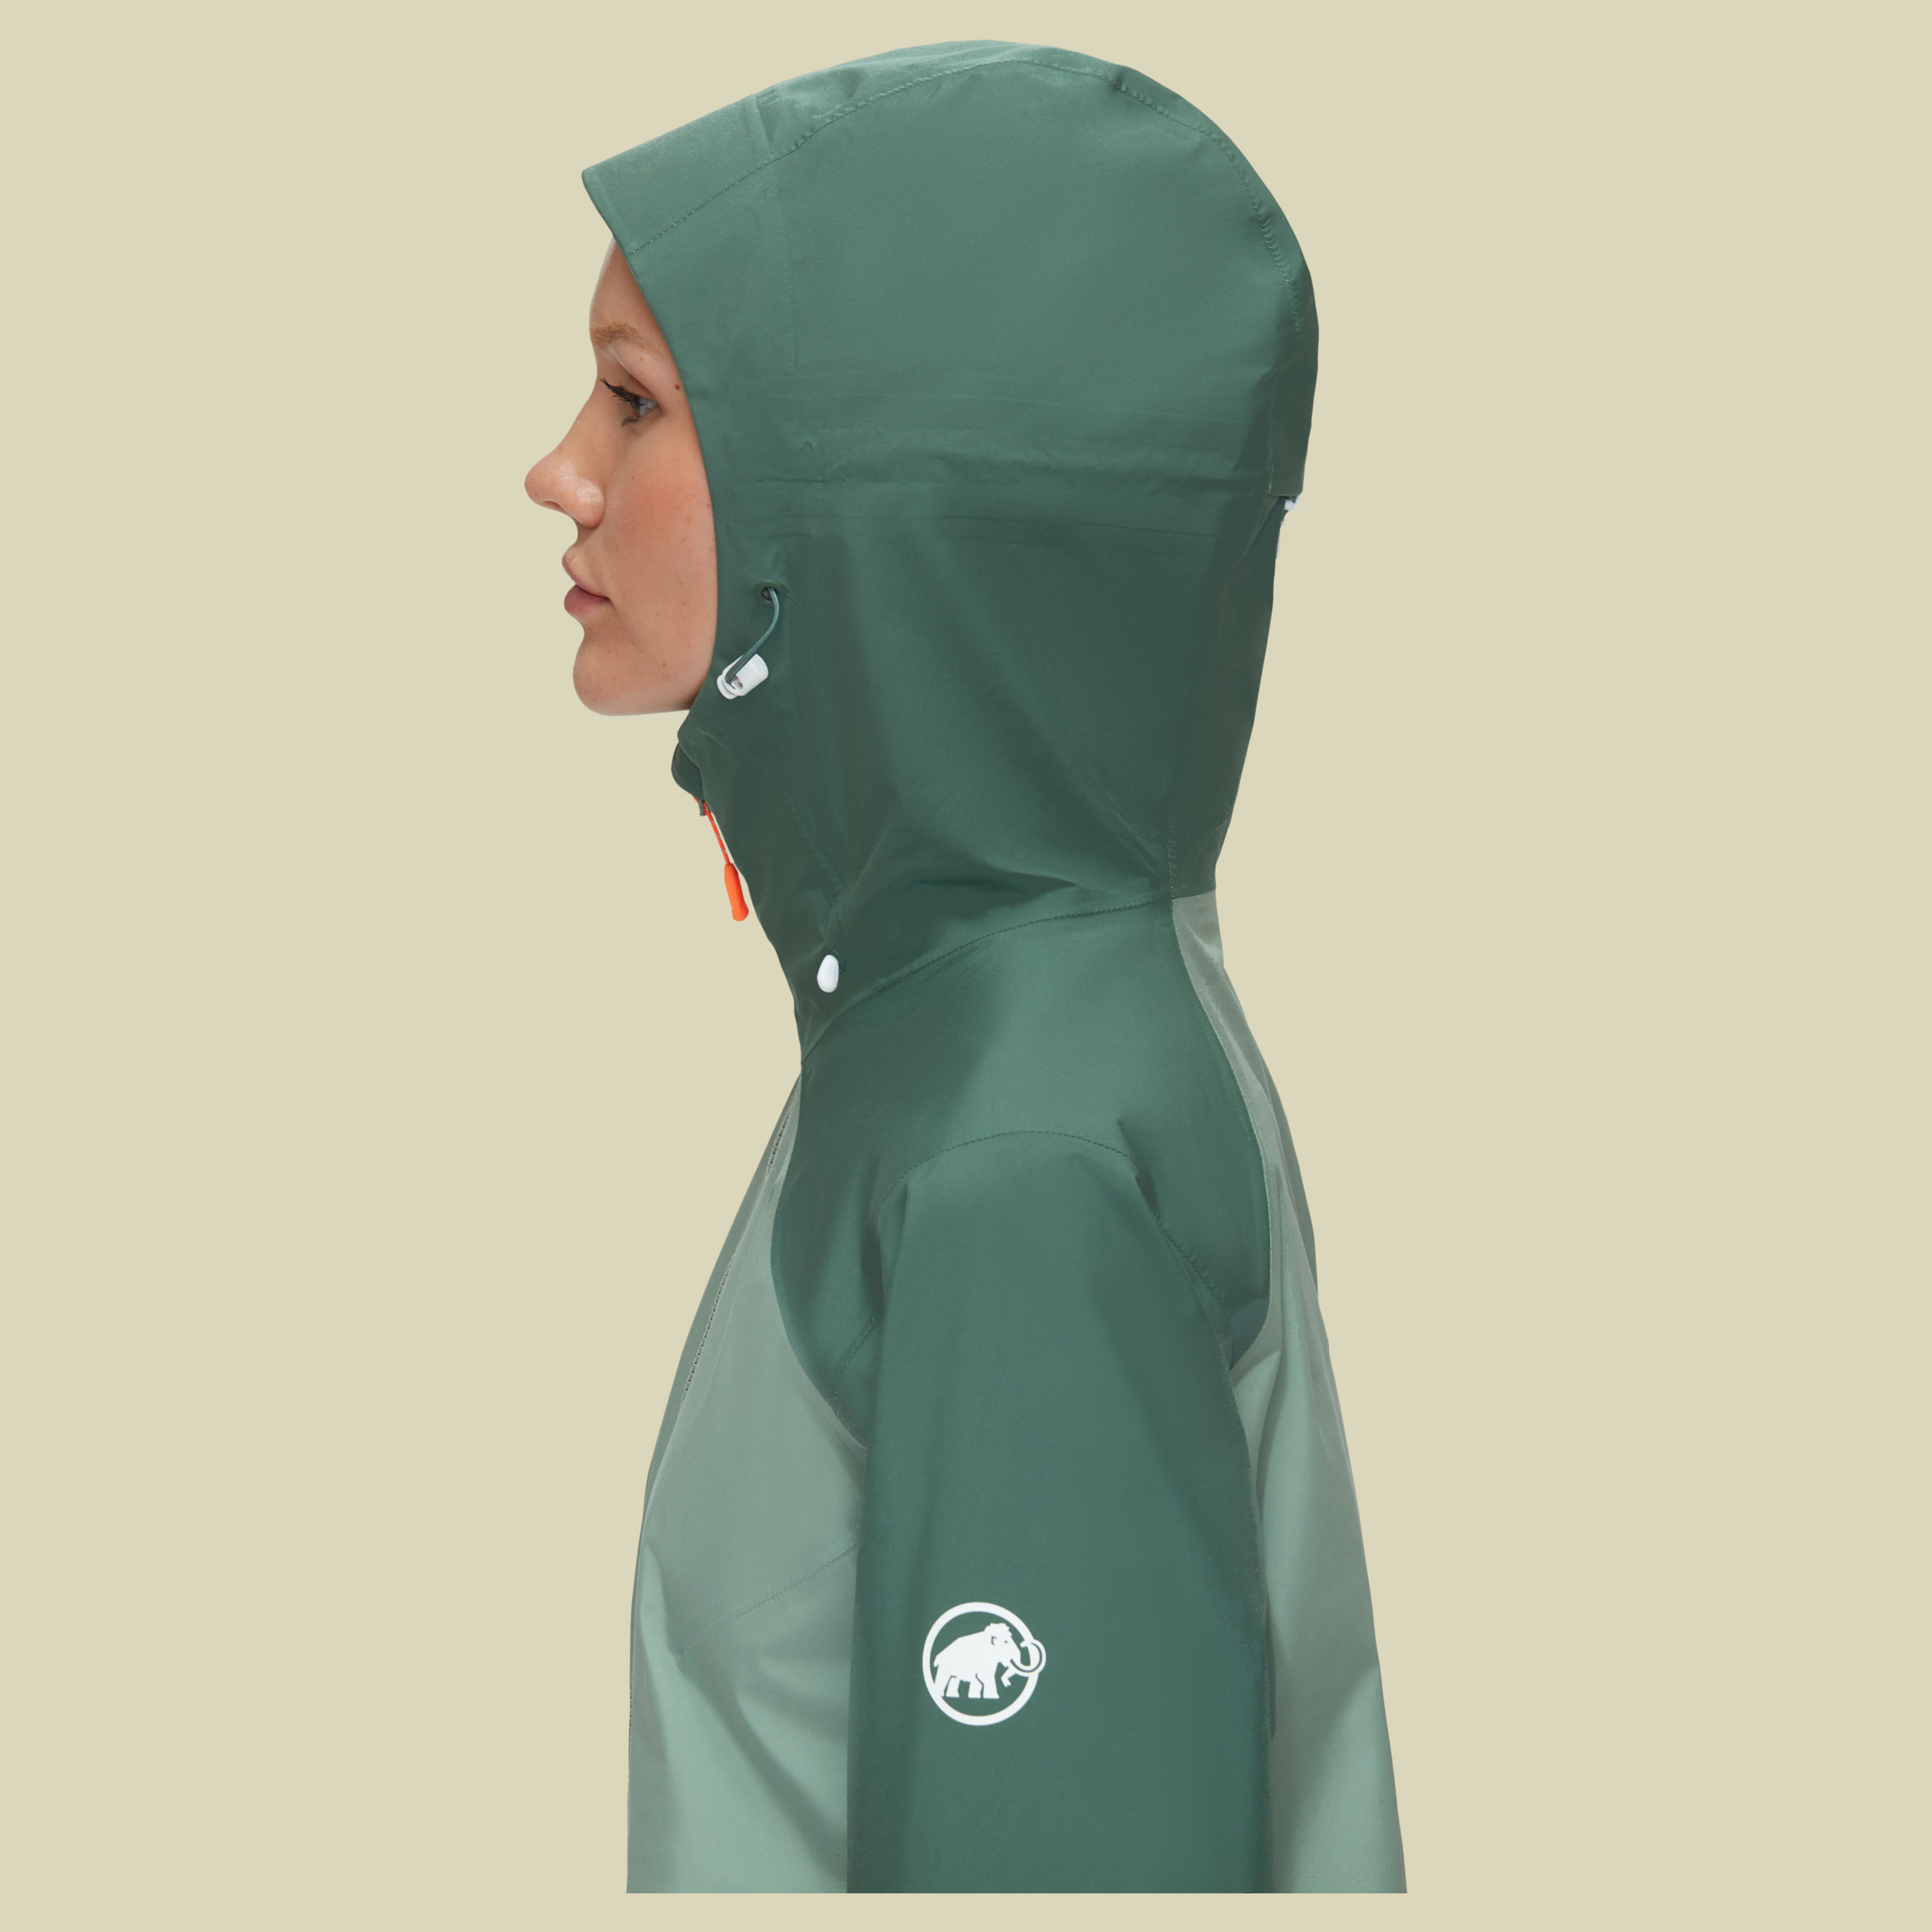 Convey Tour HS Hooded Jacket Women Größe L  Farbe jade-dark jade